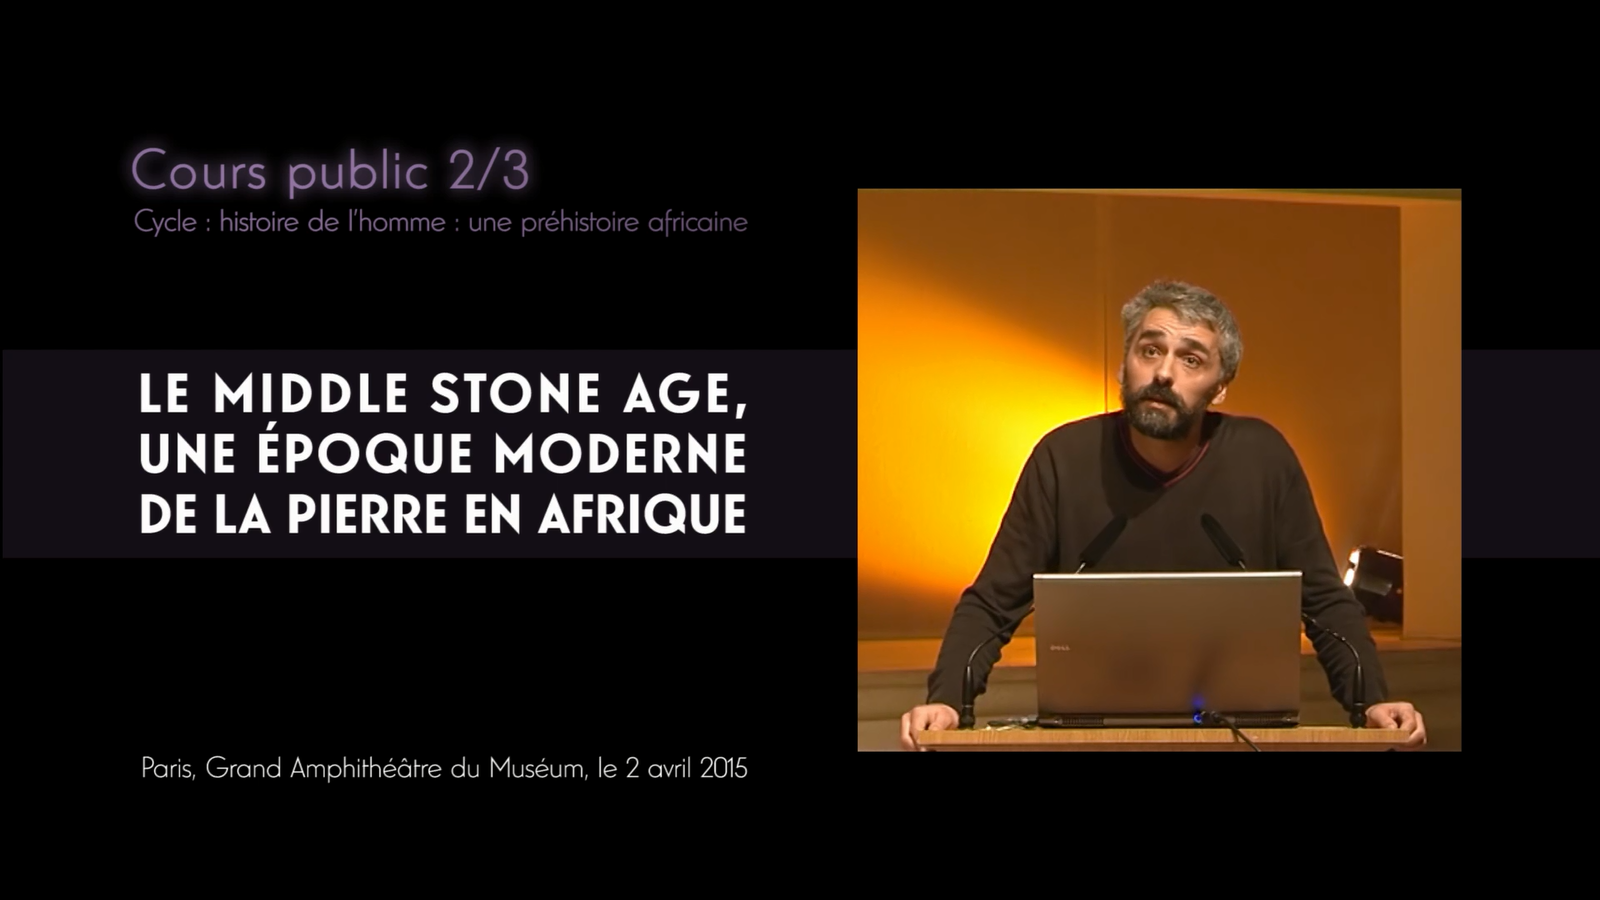 Le Middle Stone Age, une époque moderne de la pierre en Afrique